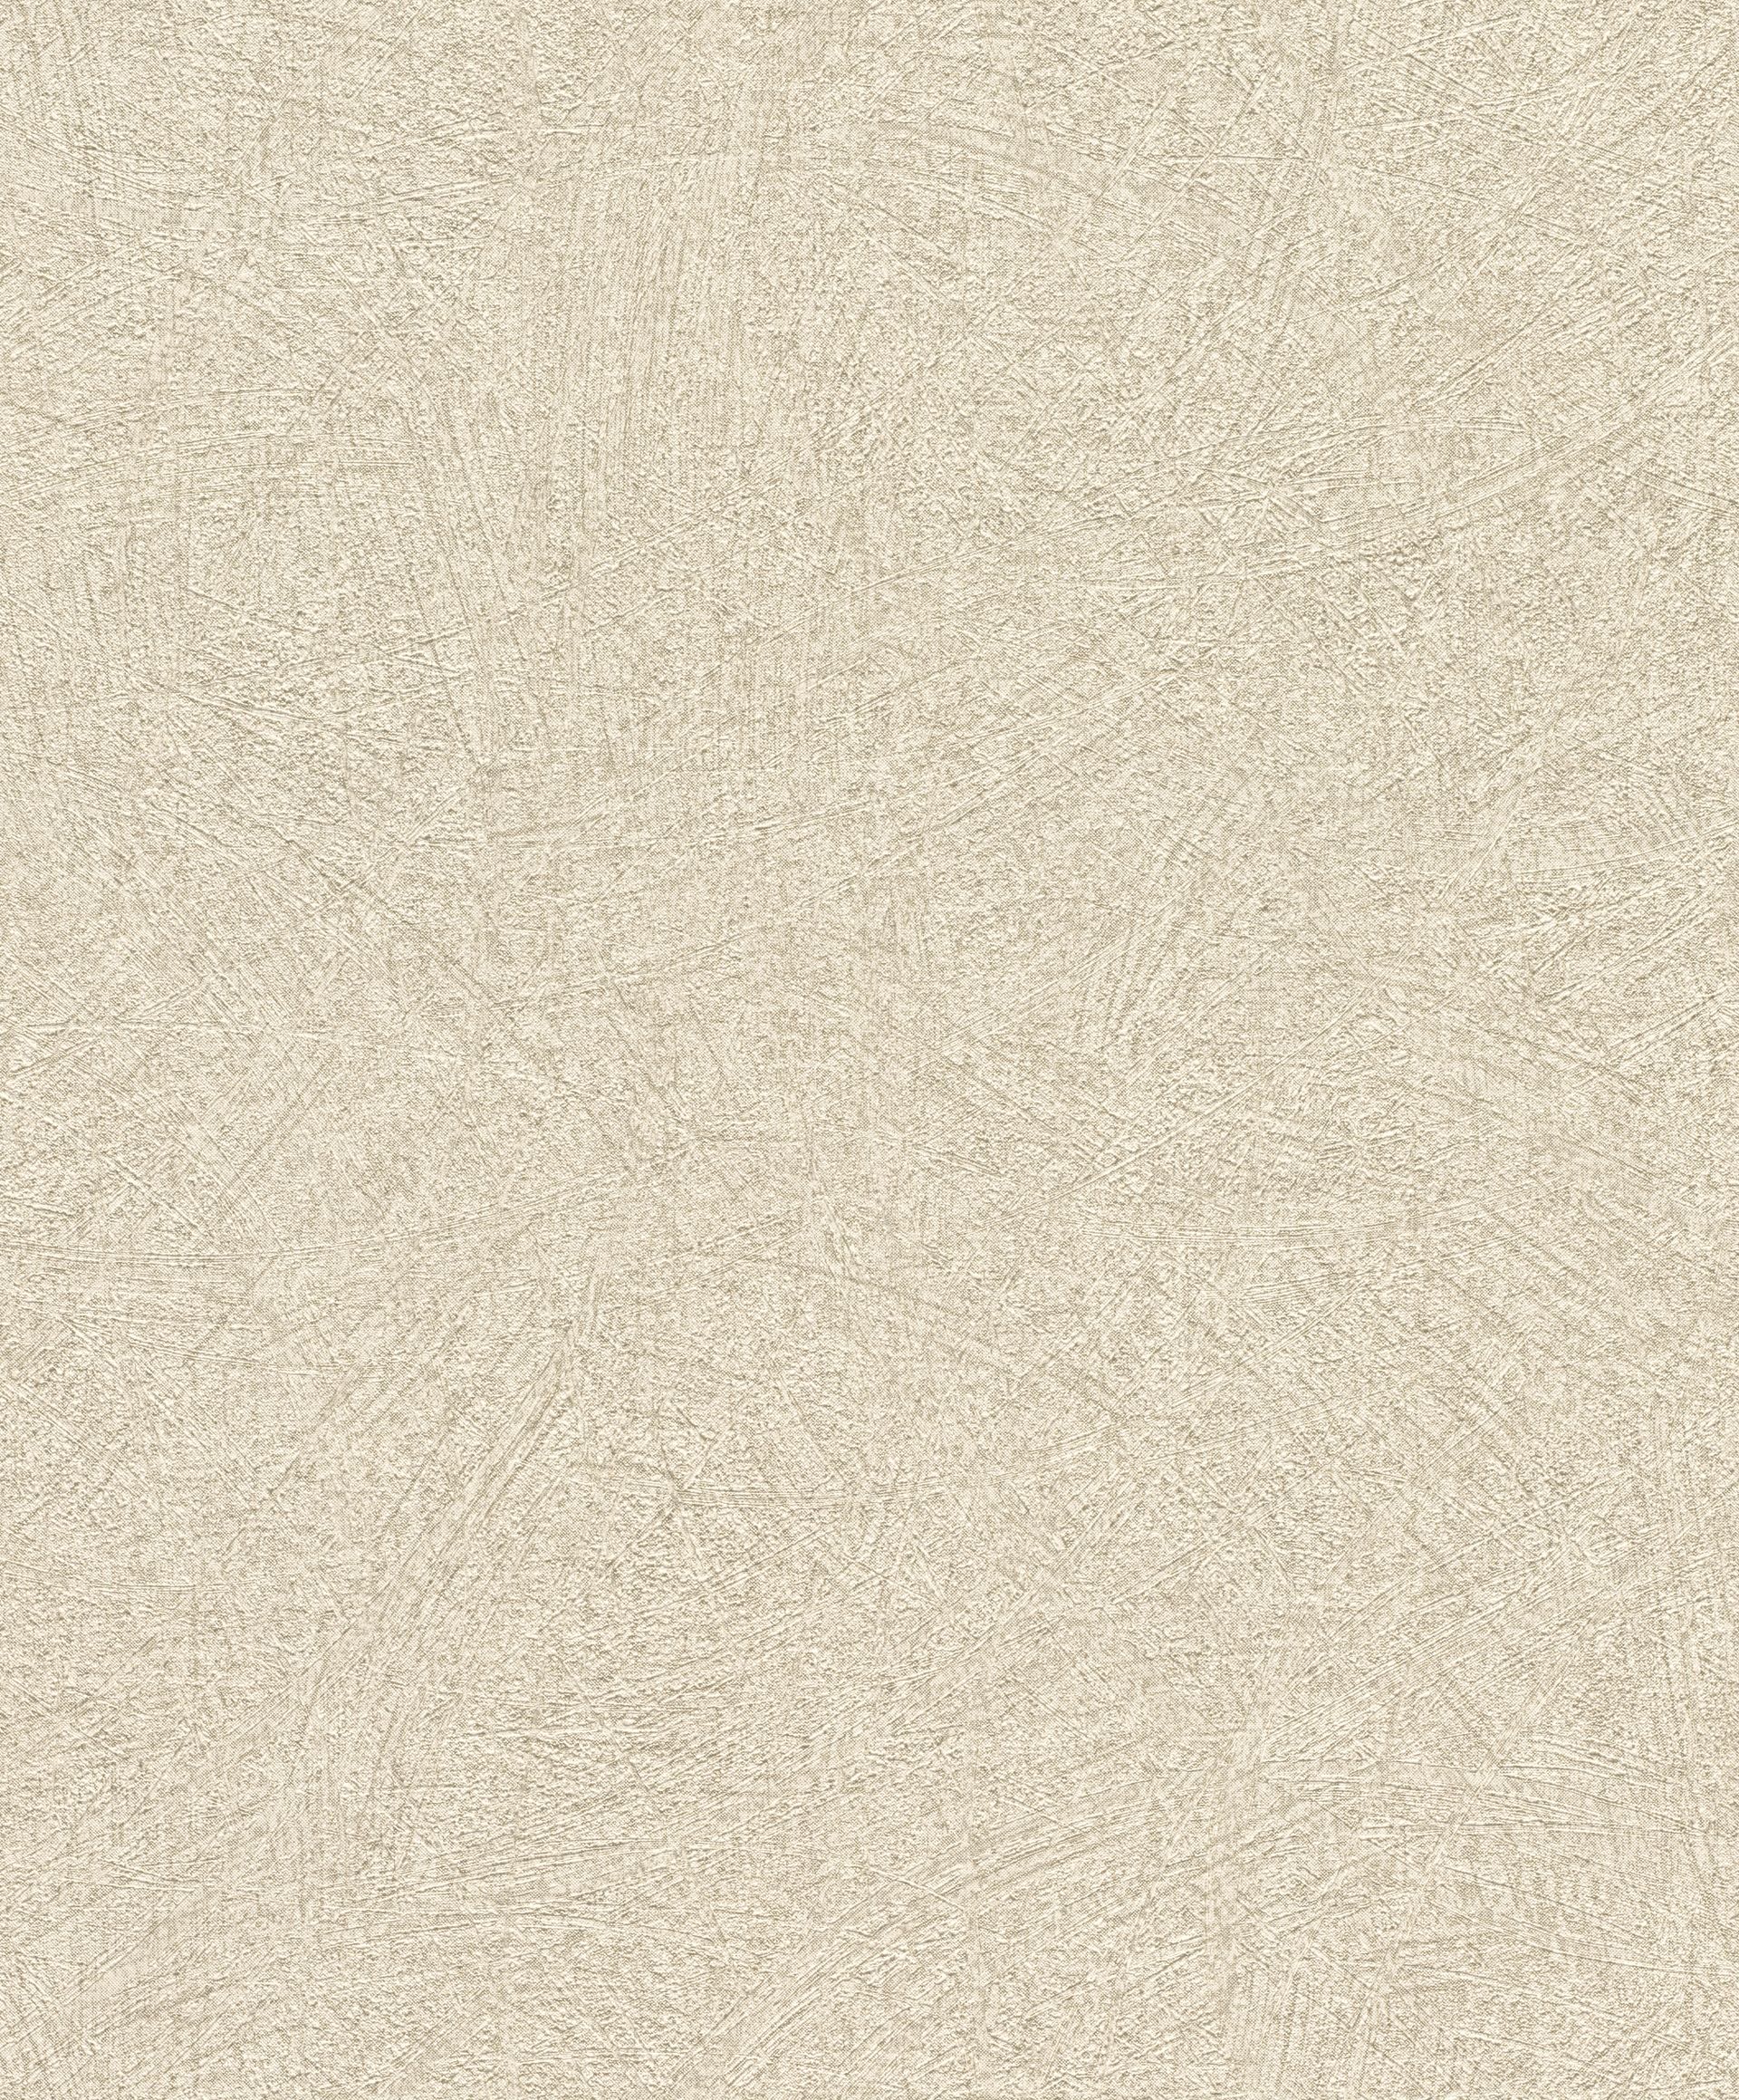 Rasch Concrete, Unis, beige gold 520248